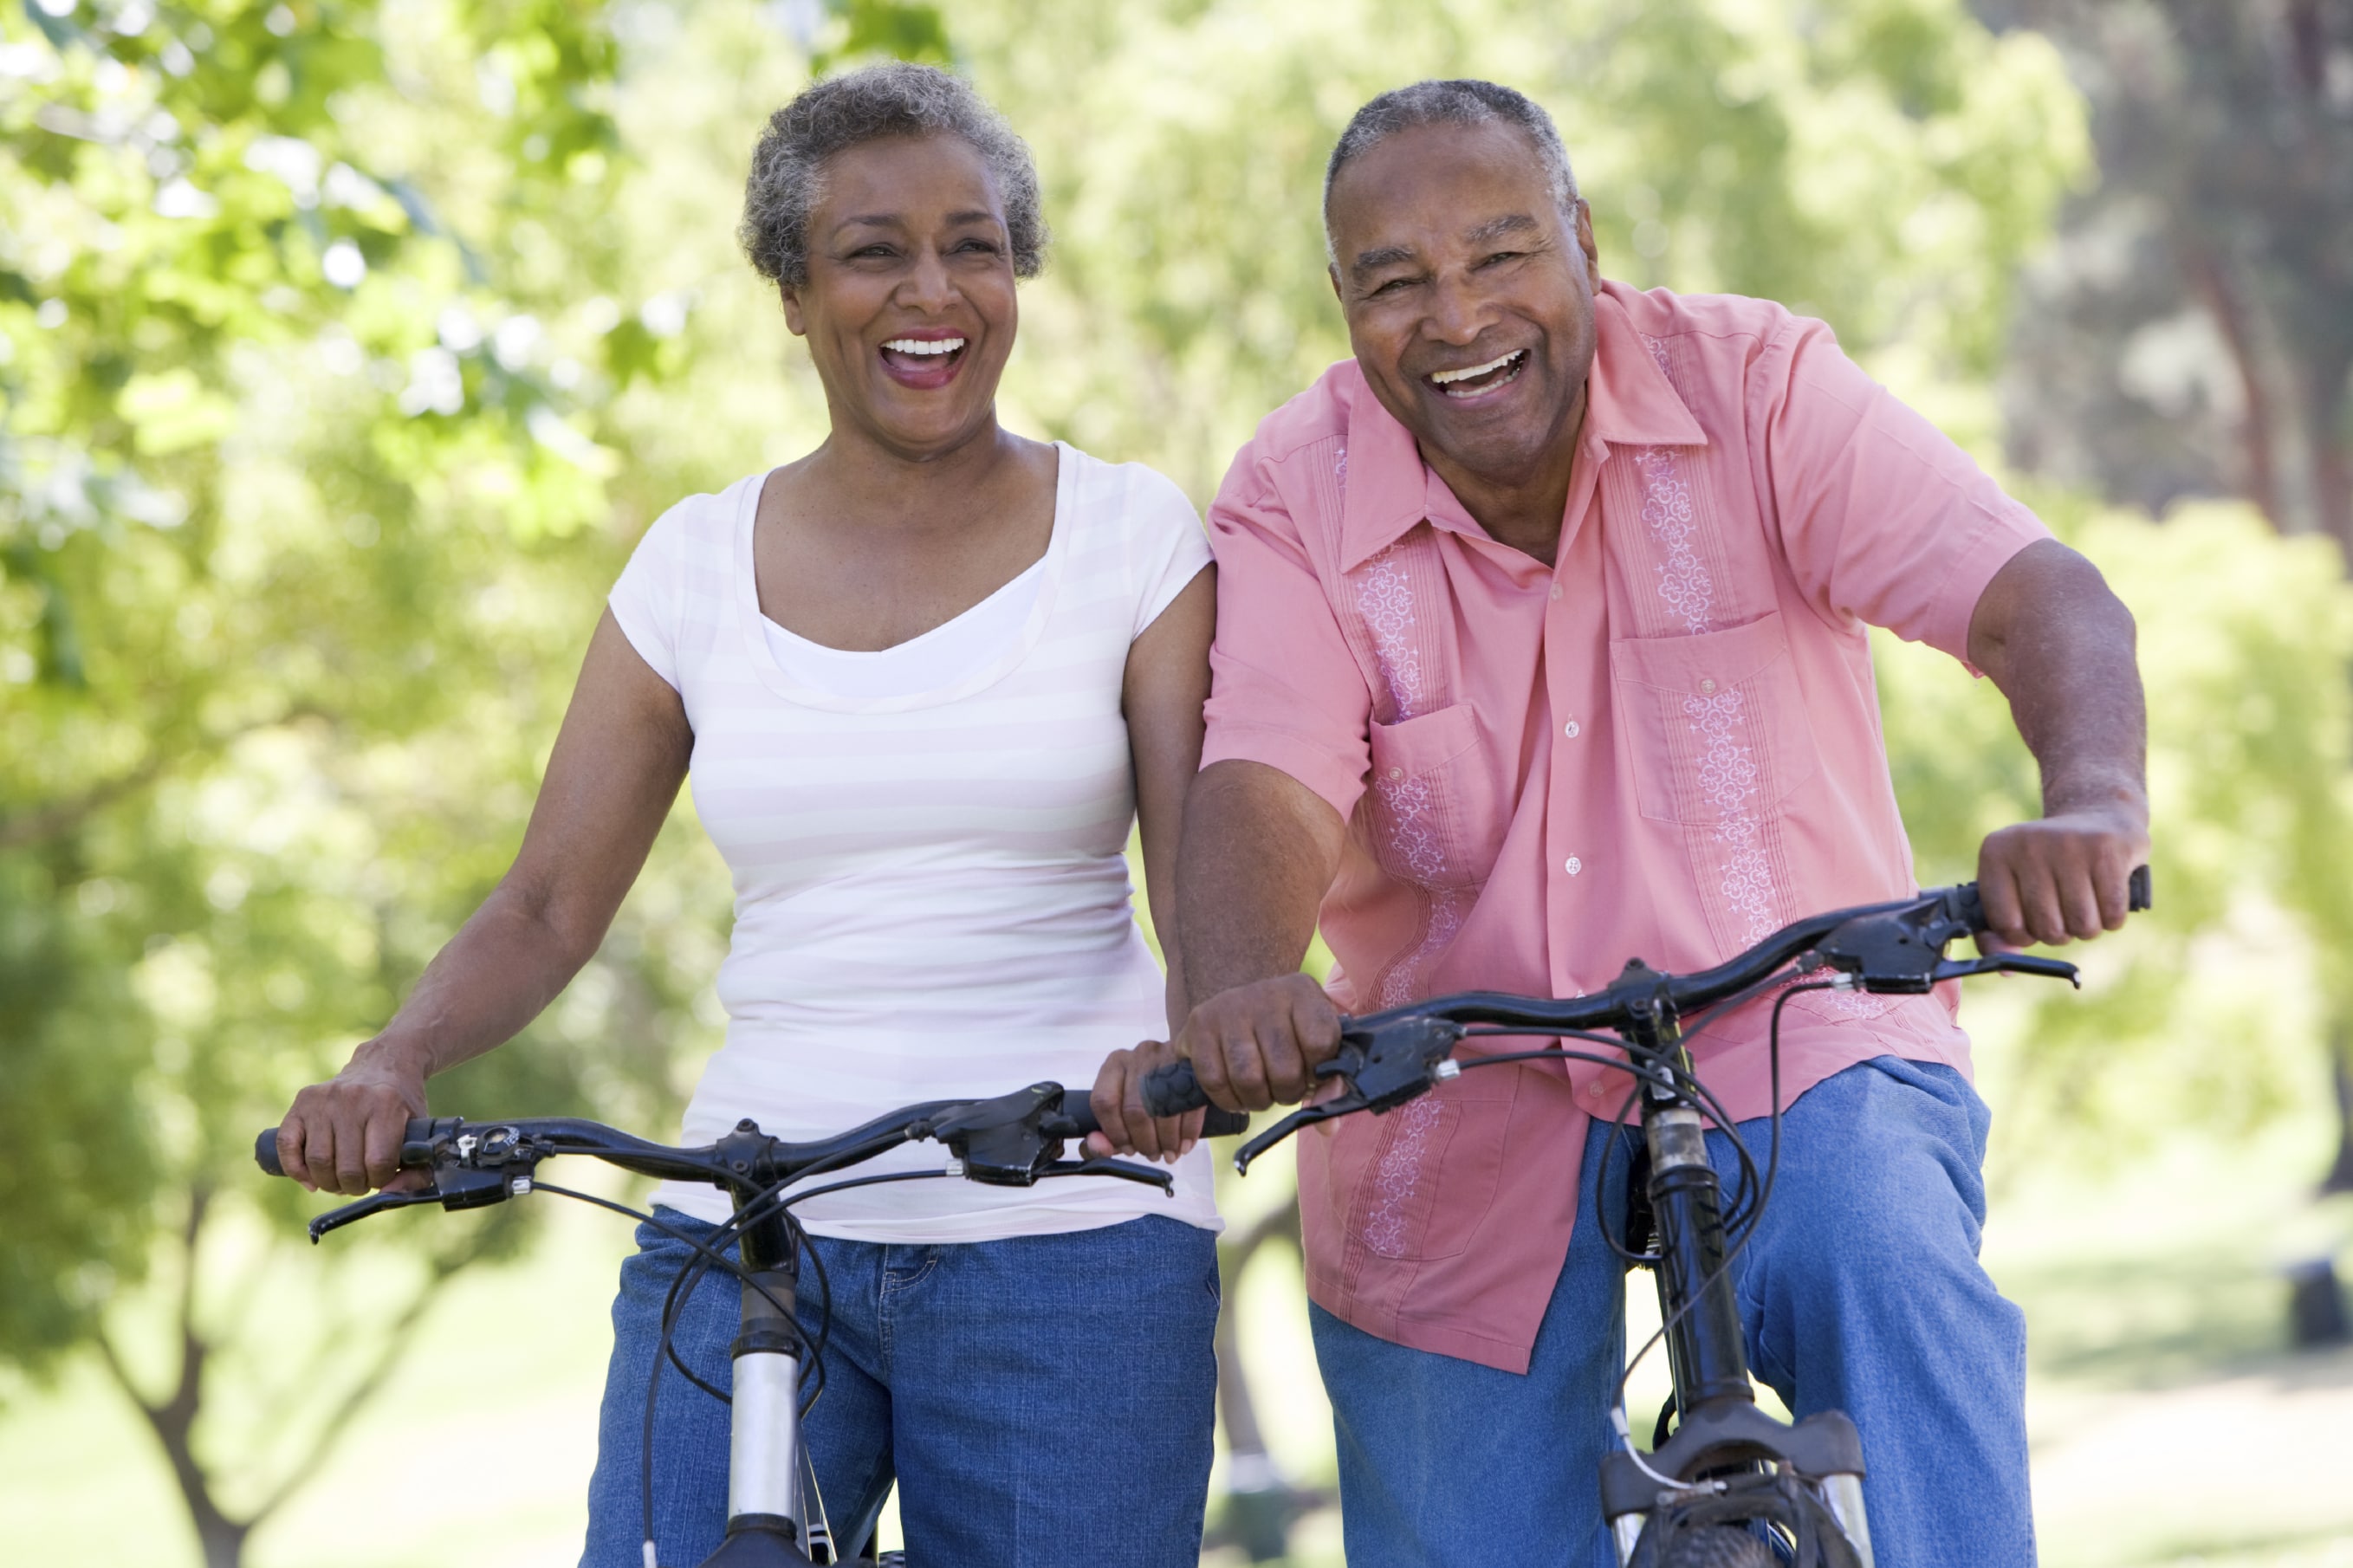 An older couple biking together